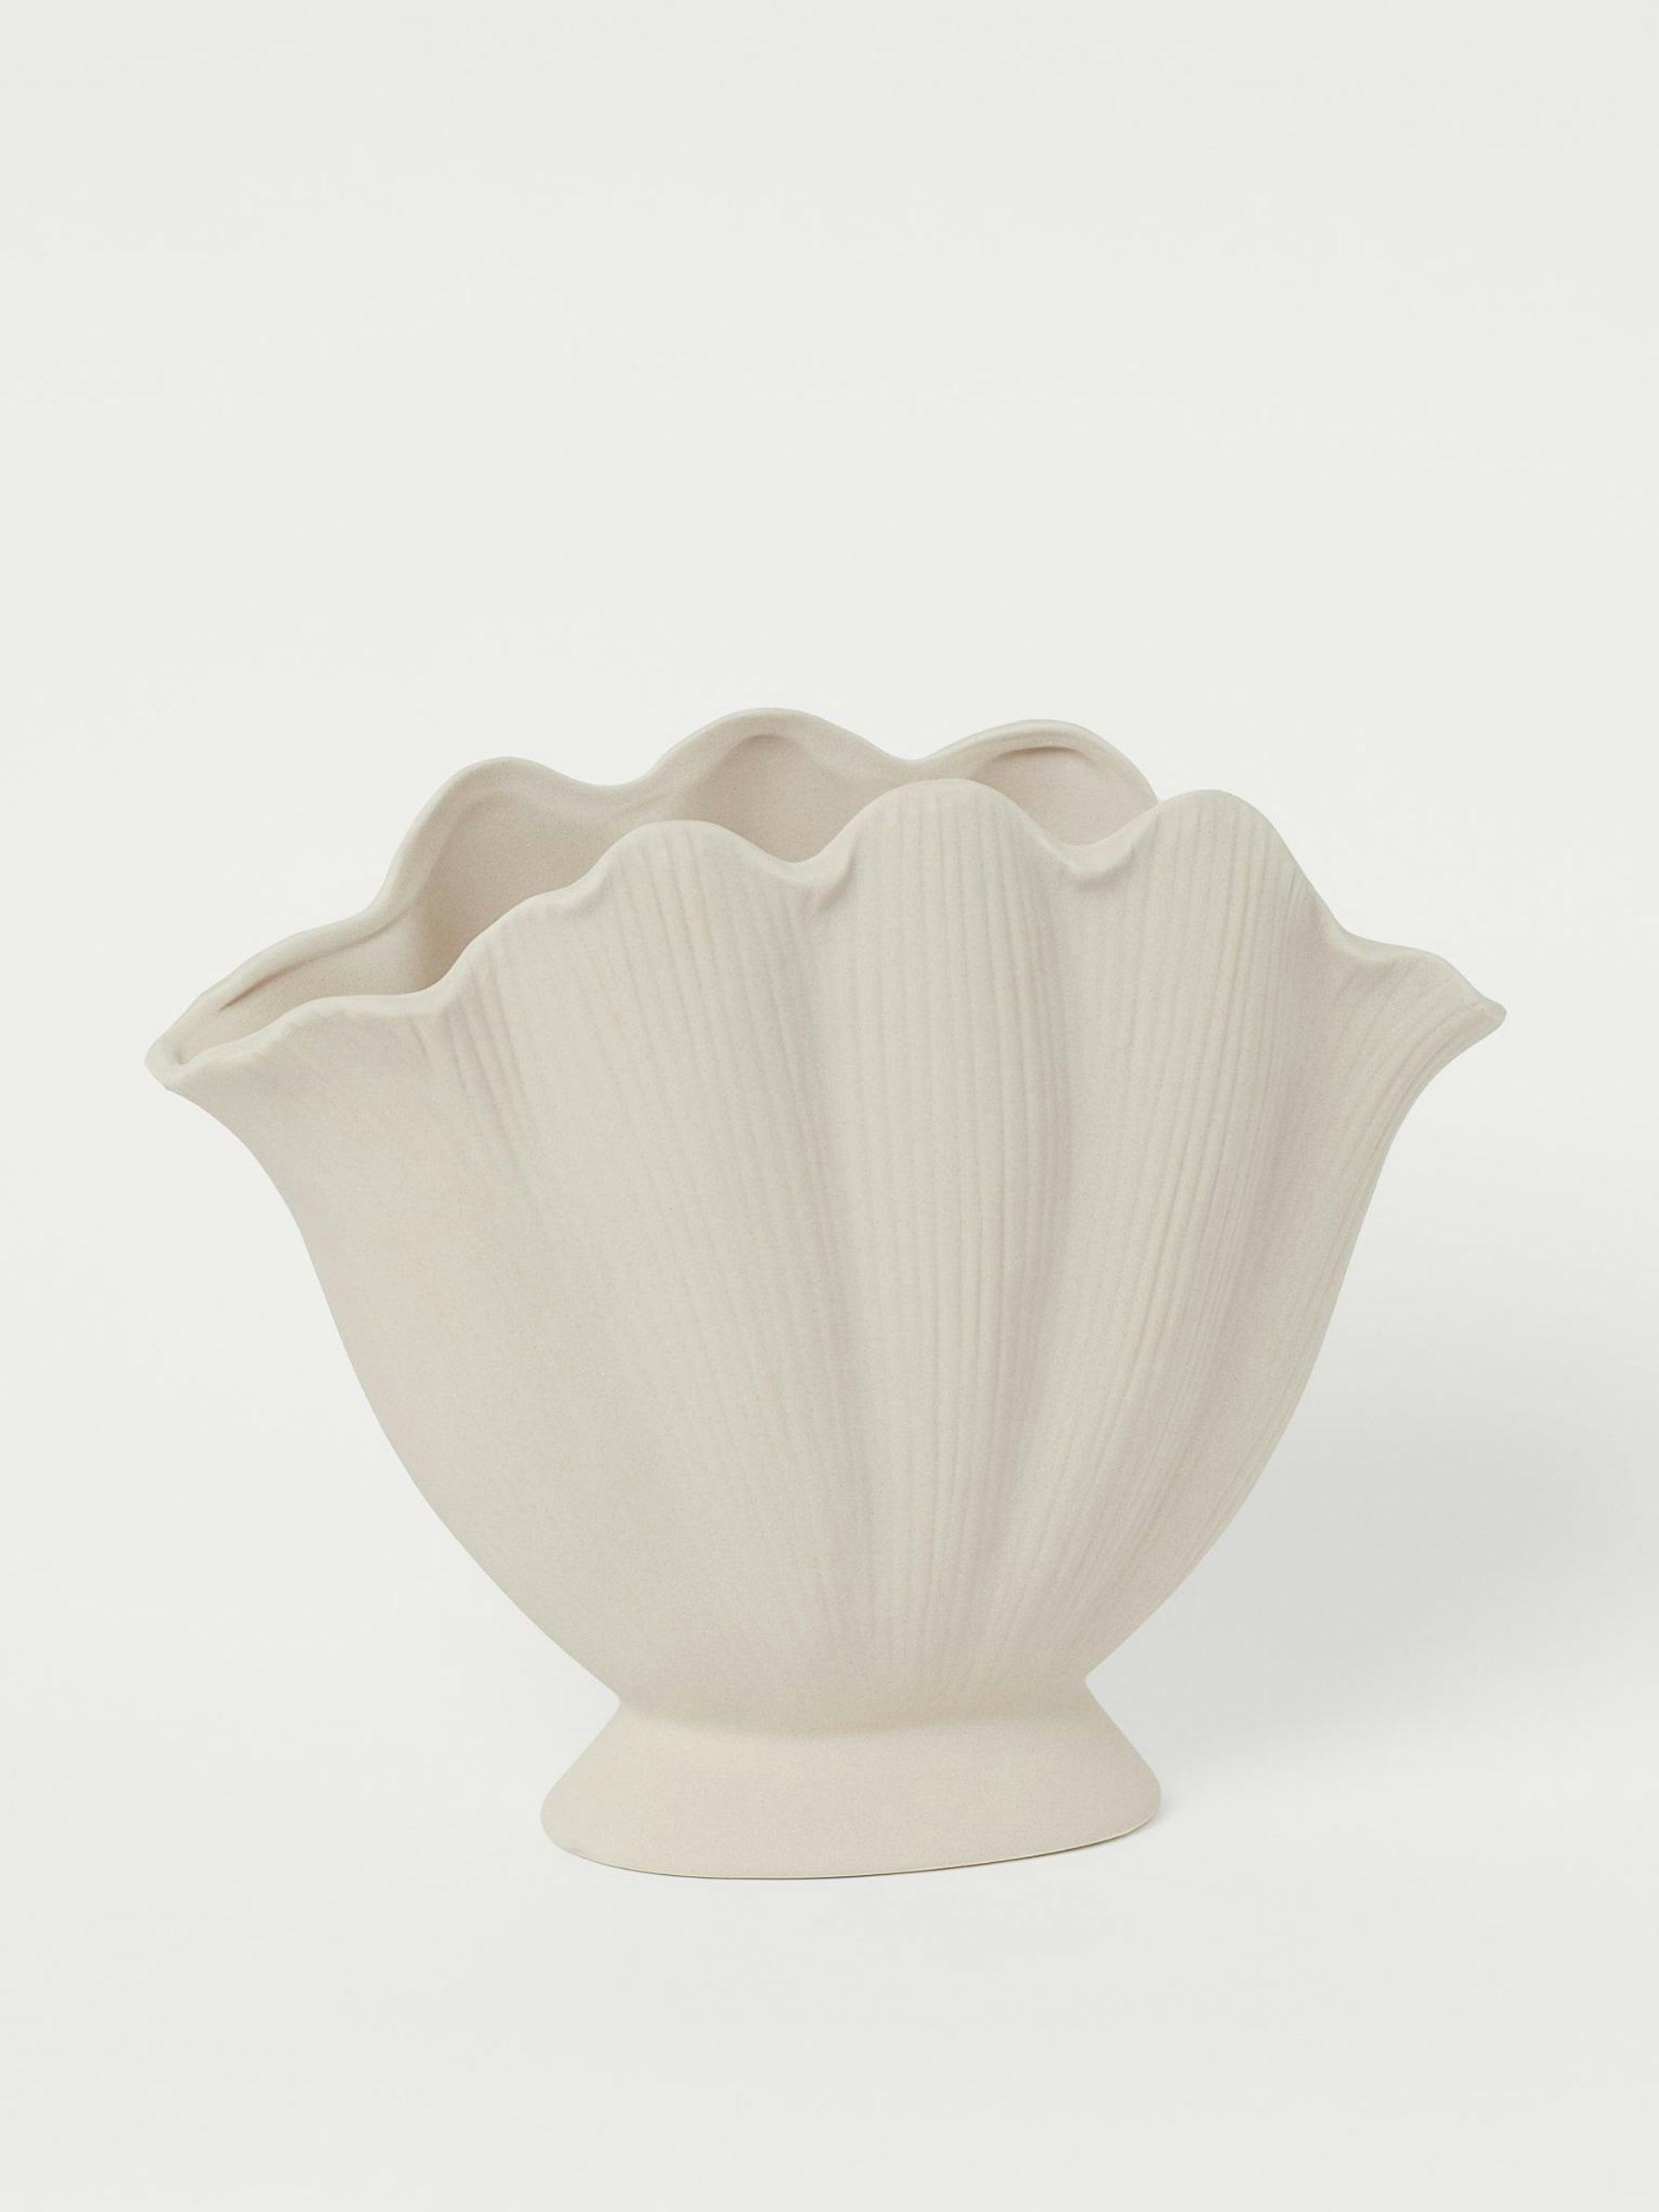 Shell shaped vase